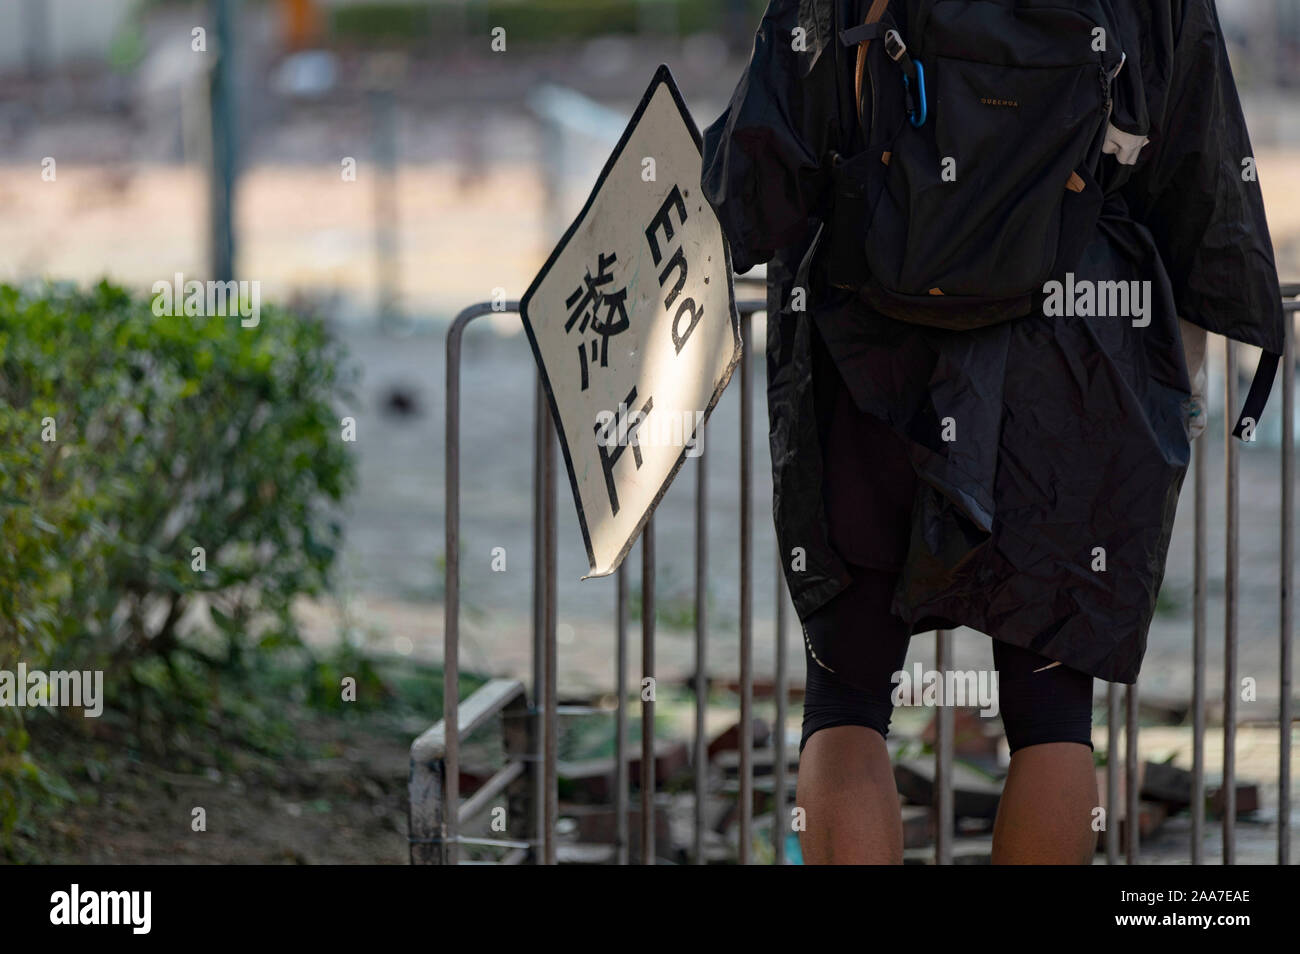 Manifestant pro-démocratique tenant un panneau routier lire comme un bouclier contre la police. Siège à l'Université Polytechnique. Surround de la police du campus de l'université après avoir pro-démocratique manifestants ont bloqué le port, tunnel et la route principale à l'extérieur du campus. Hong Kong continue de protestation sur son sixième mois. Une grève à l'échelle de la ville a appelé à commencé le lundi 11 novembre, 2019 qui a parties de Hong Kong d'arrêter en tant que stations de métro fermées et plusieurs barrages routiers ont été érigés. Hong Kong, 17.11.2019 Banque D'Images